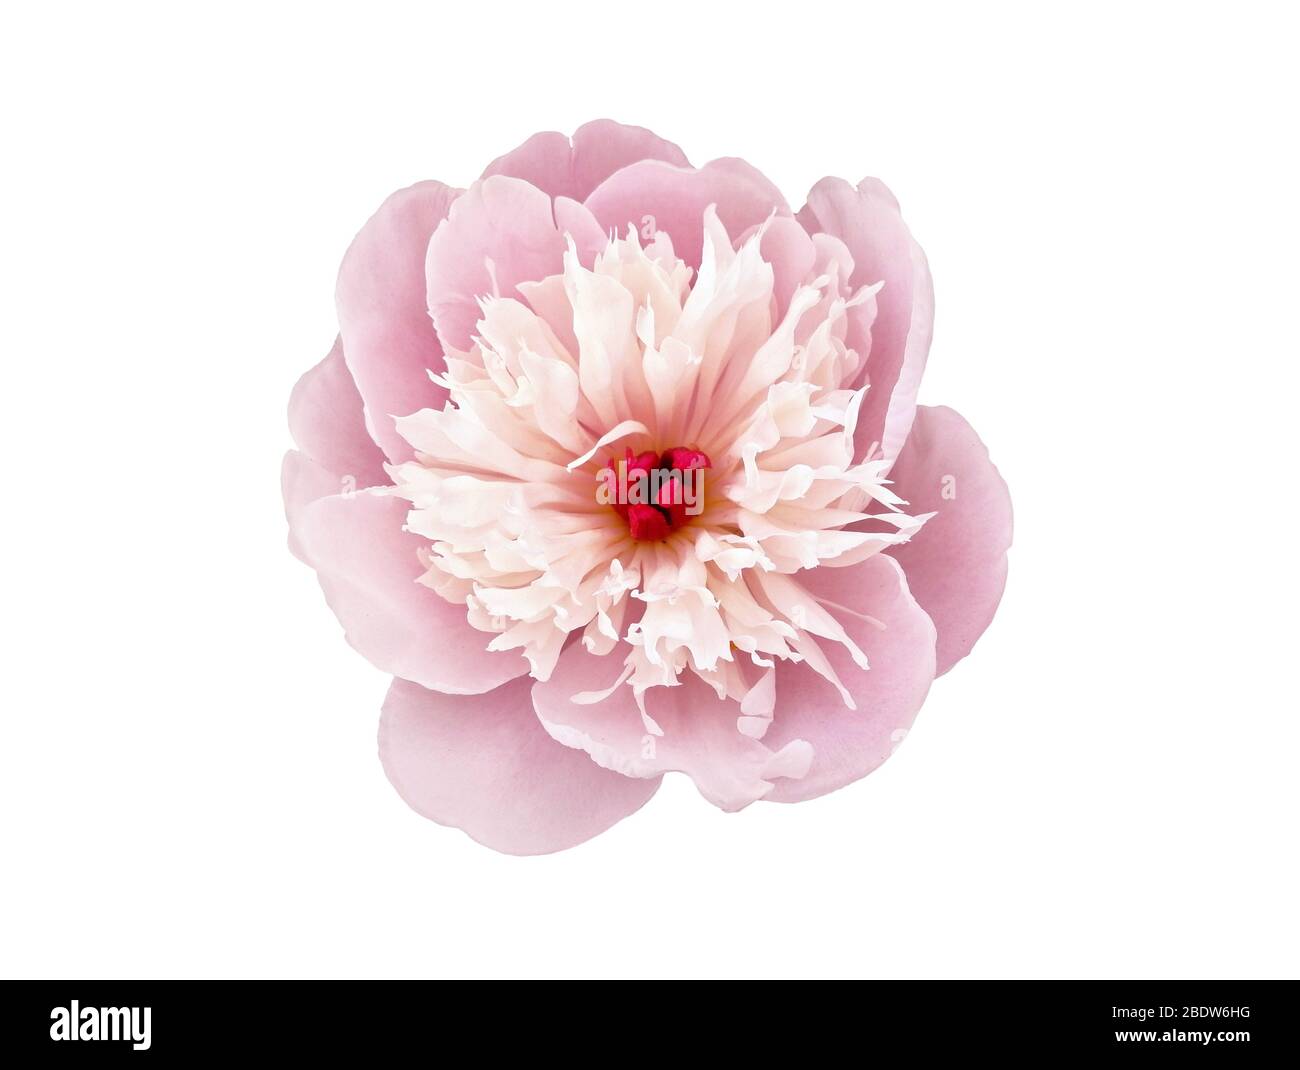 Japonais, type anemone de floraison. Pivoine rose isolée sur fond blanc Banque D'Images